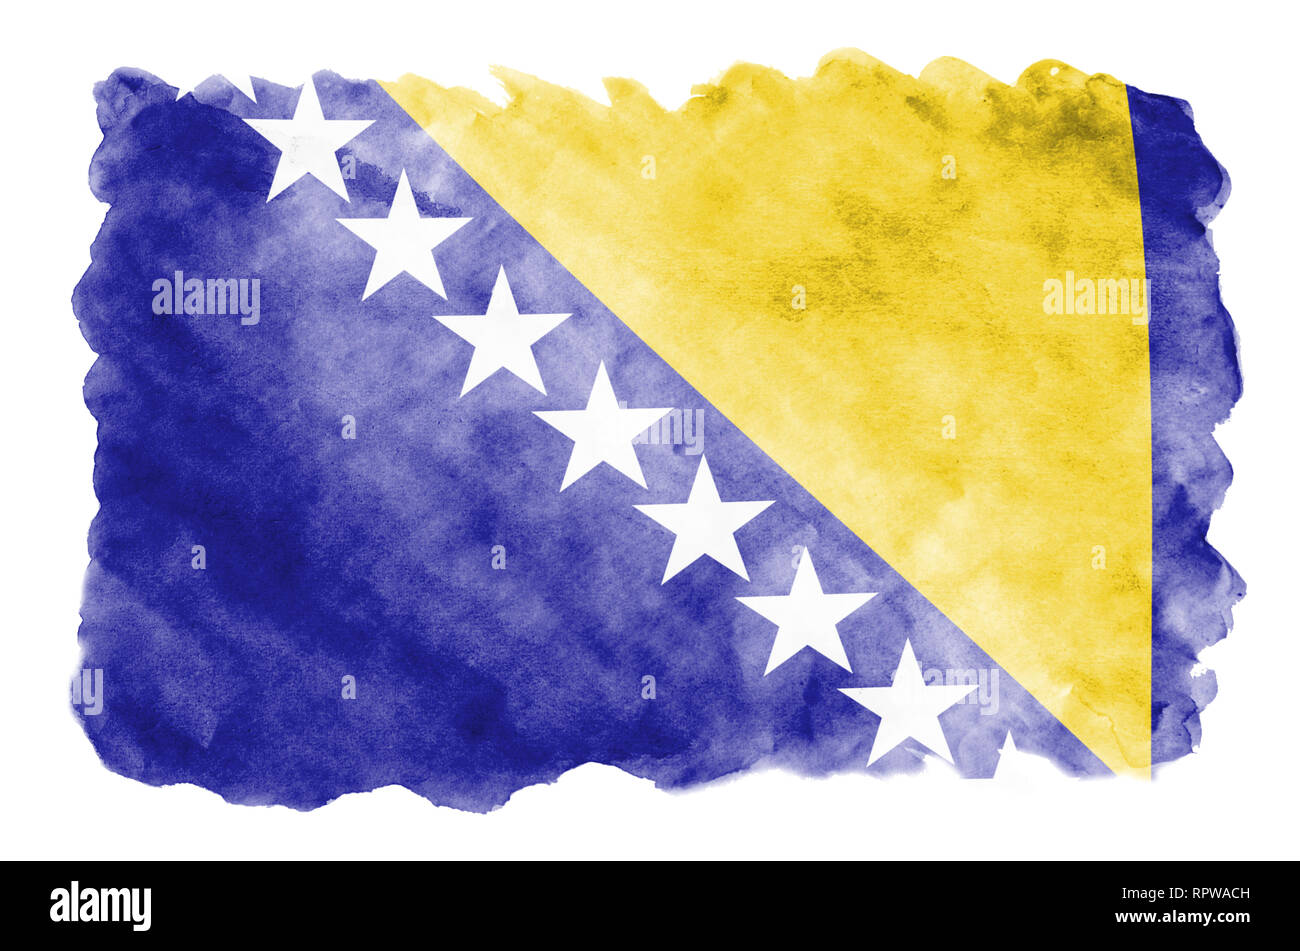 La Bosnie-et-Herzégovine drapeau est représenté dans un style aquarelle liquide isolé sur fond blanc. Peinture imprudente avec ombrage image de drapeau national. Banque D'Images